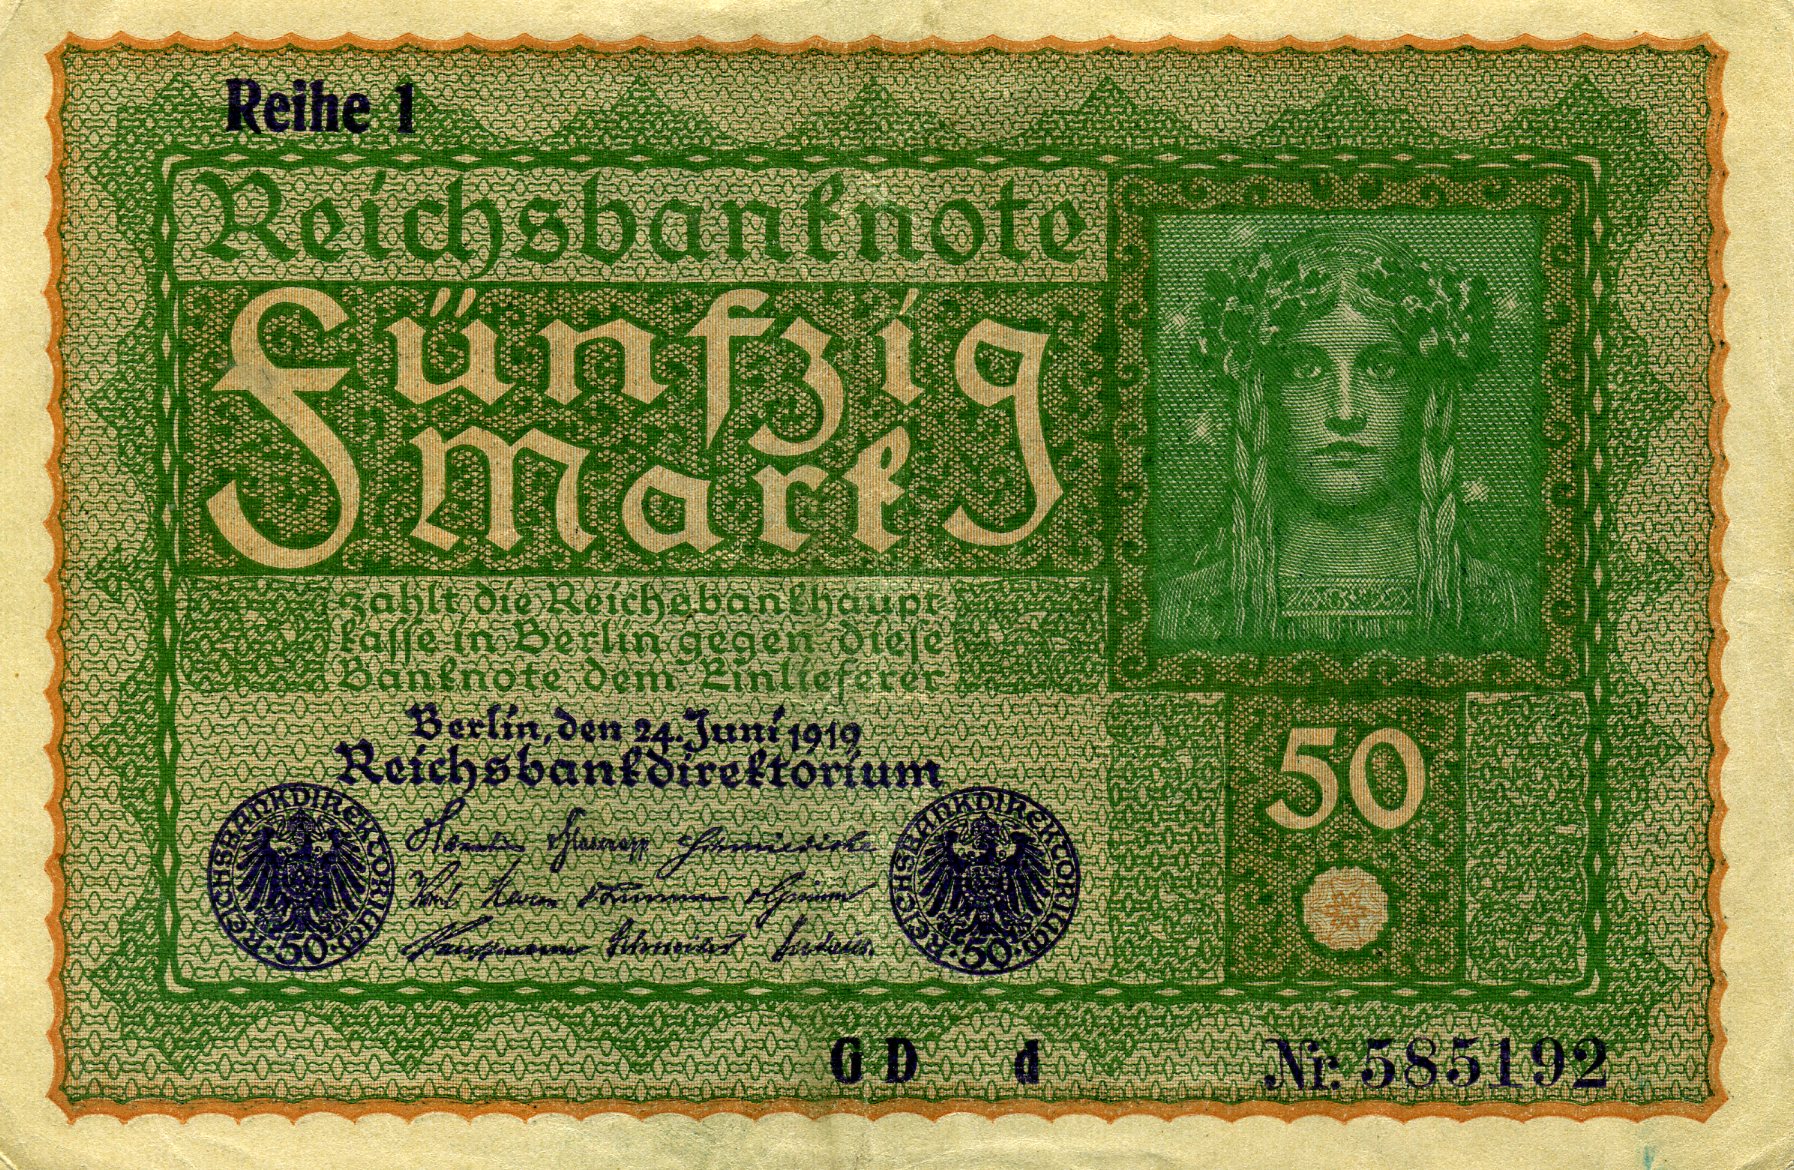 50 марок 24 июня 1919 года. Аверс. Реферат Рефератович.